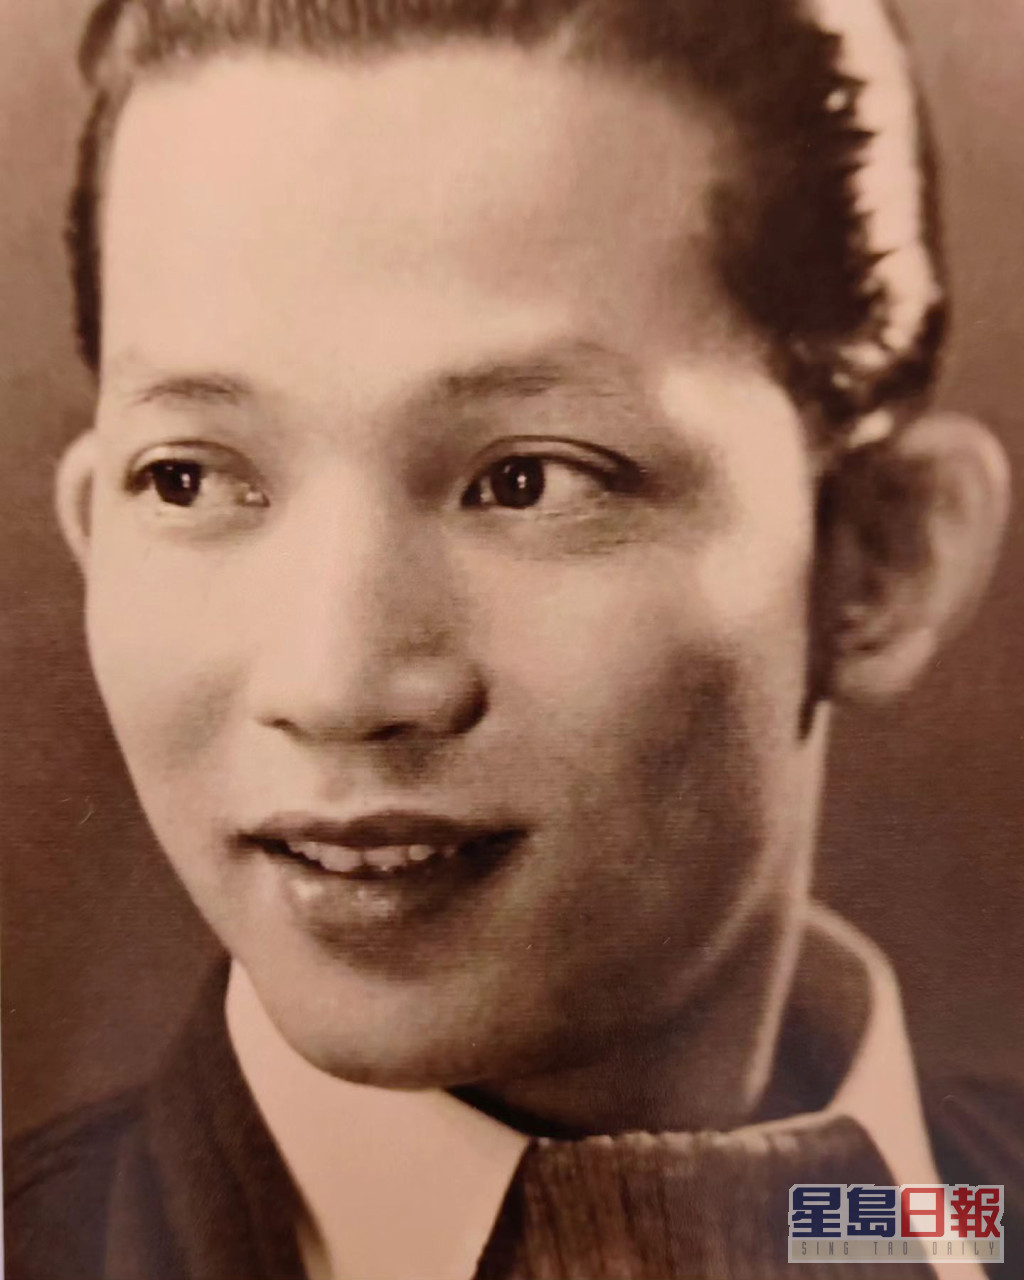 冯素波的爸爸是已故导演兼演员冯峰。